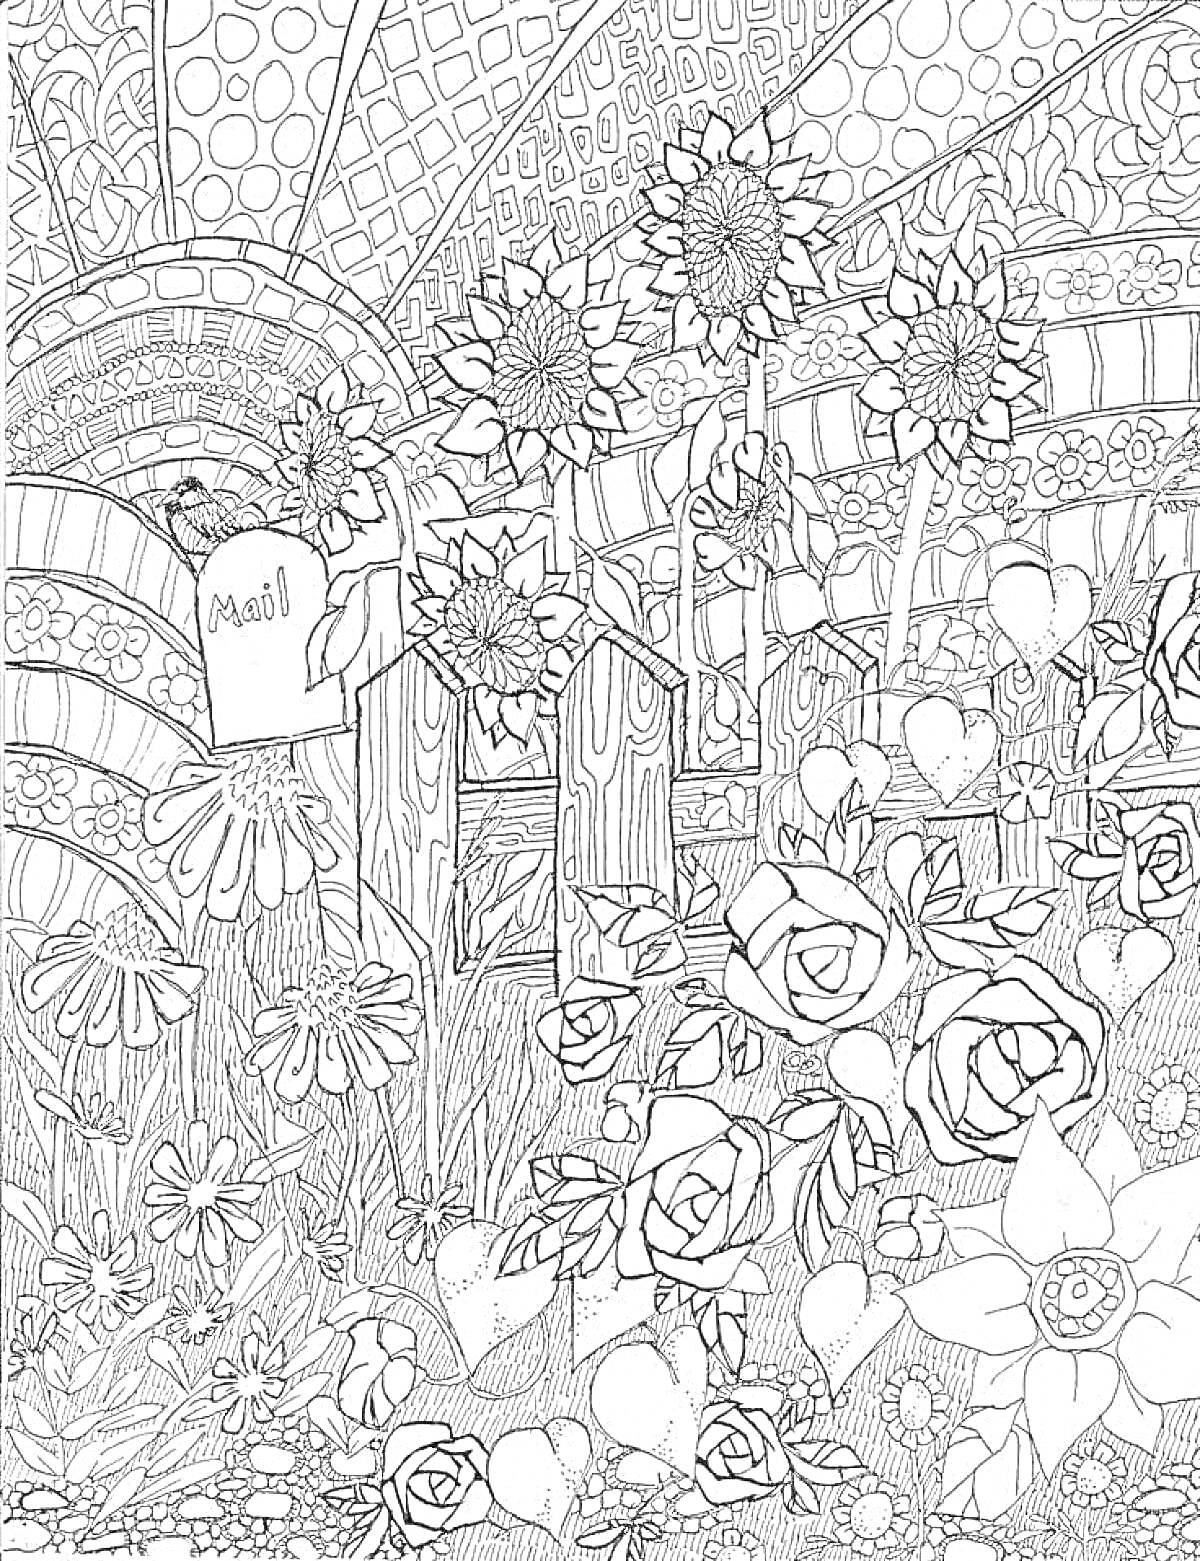 Цветочный сад с подсолнухами, полевыми цветами, розами, почтовым ящиком и забором на фоне абстрактного узора